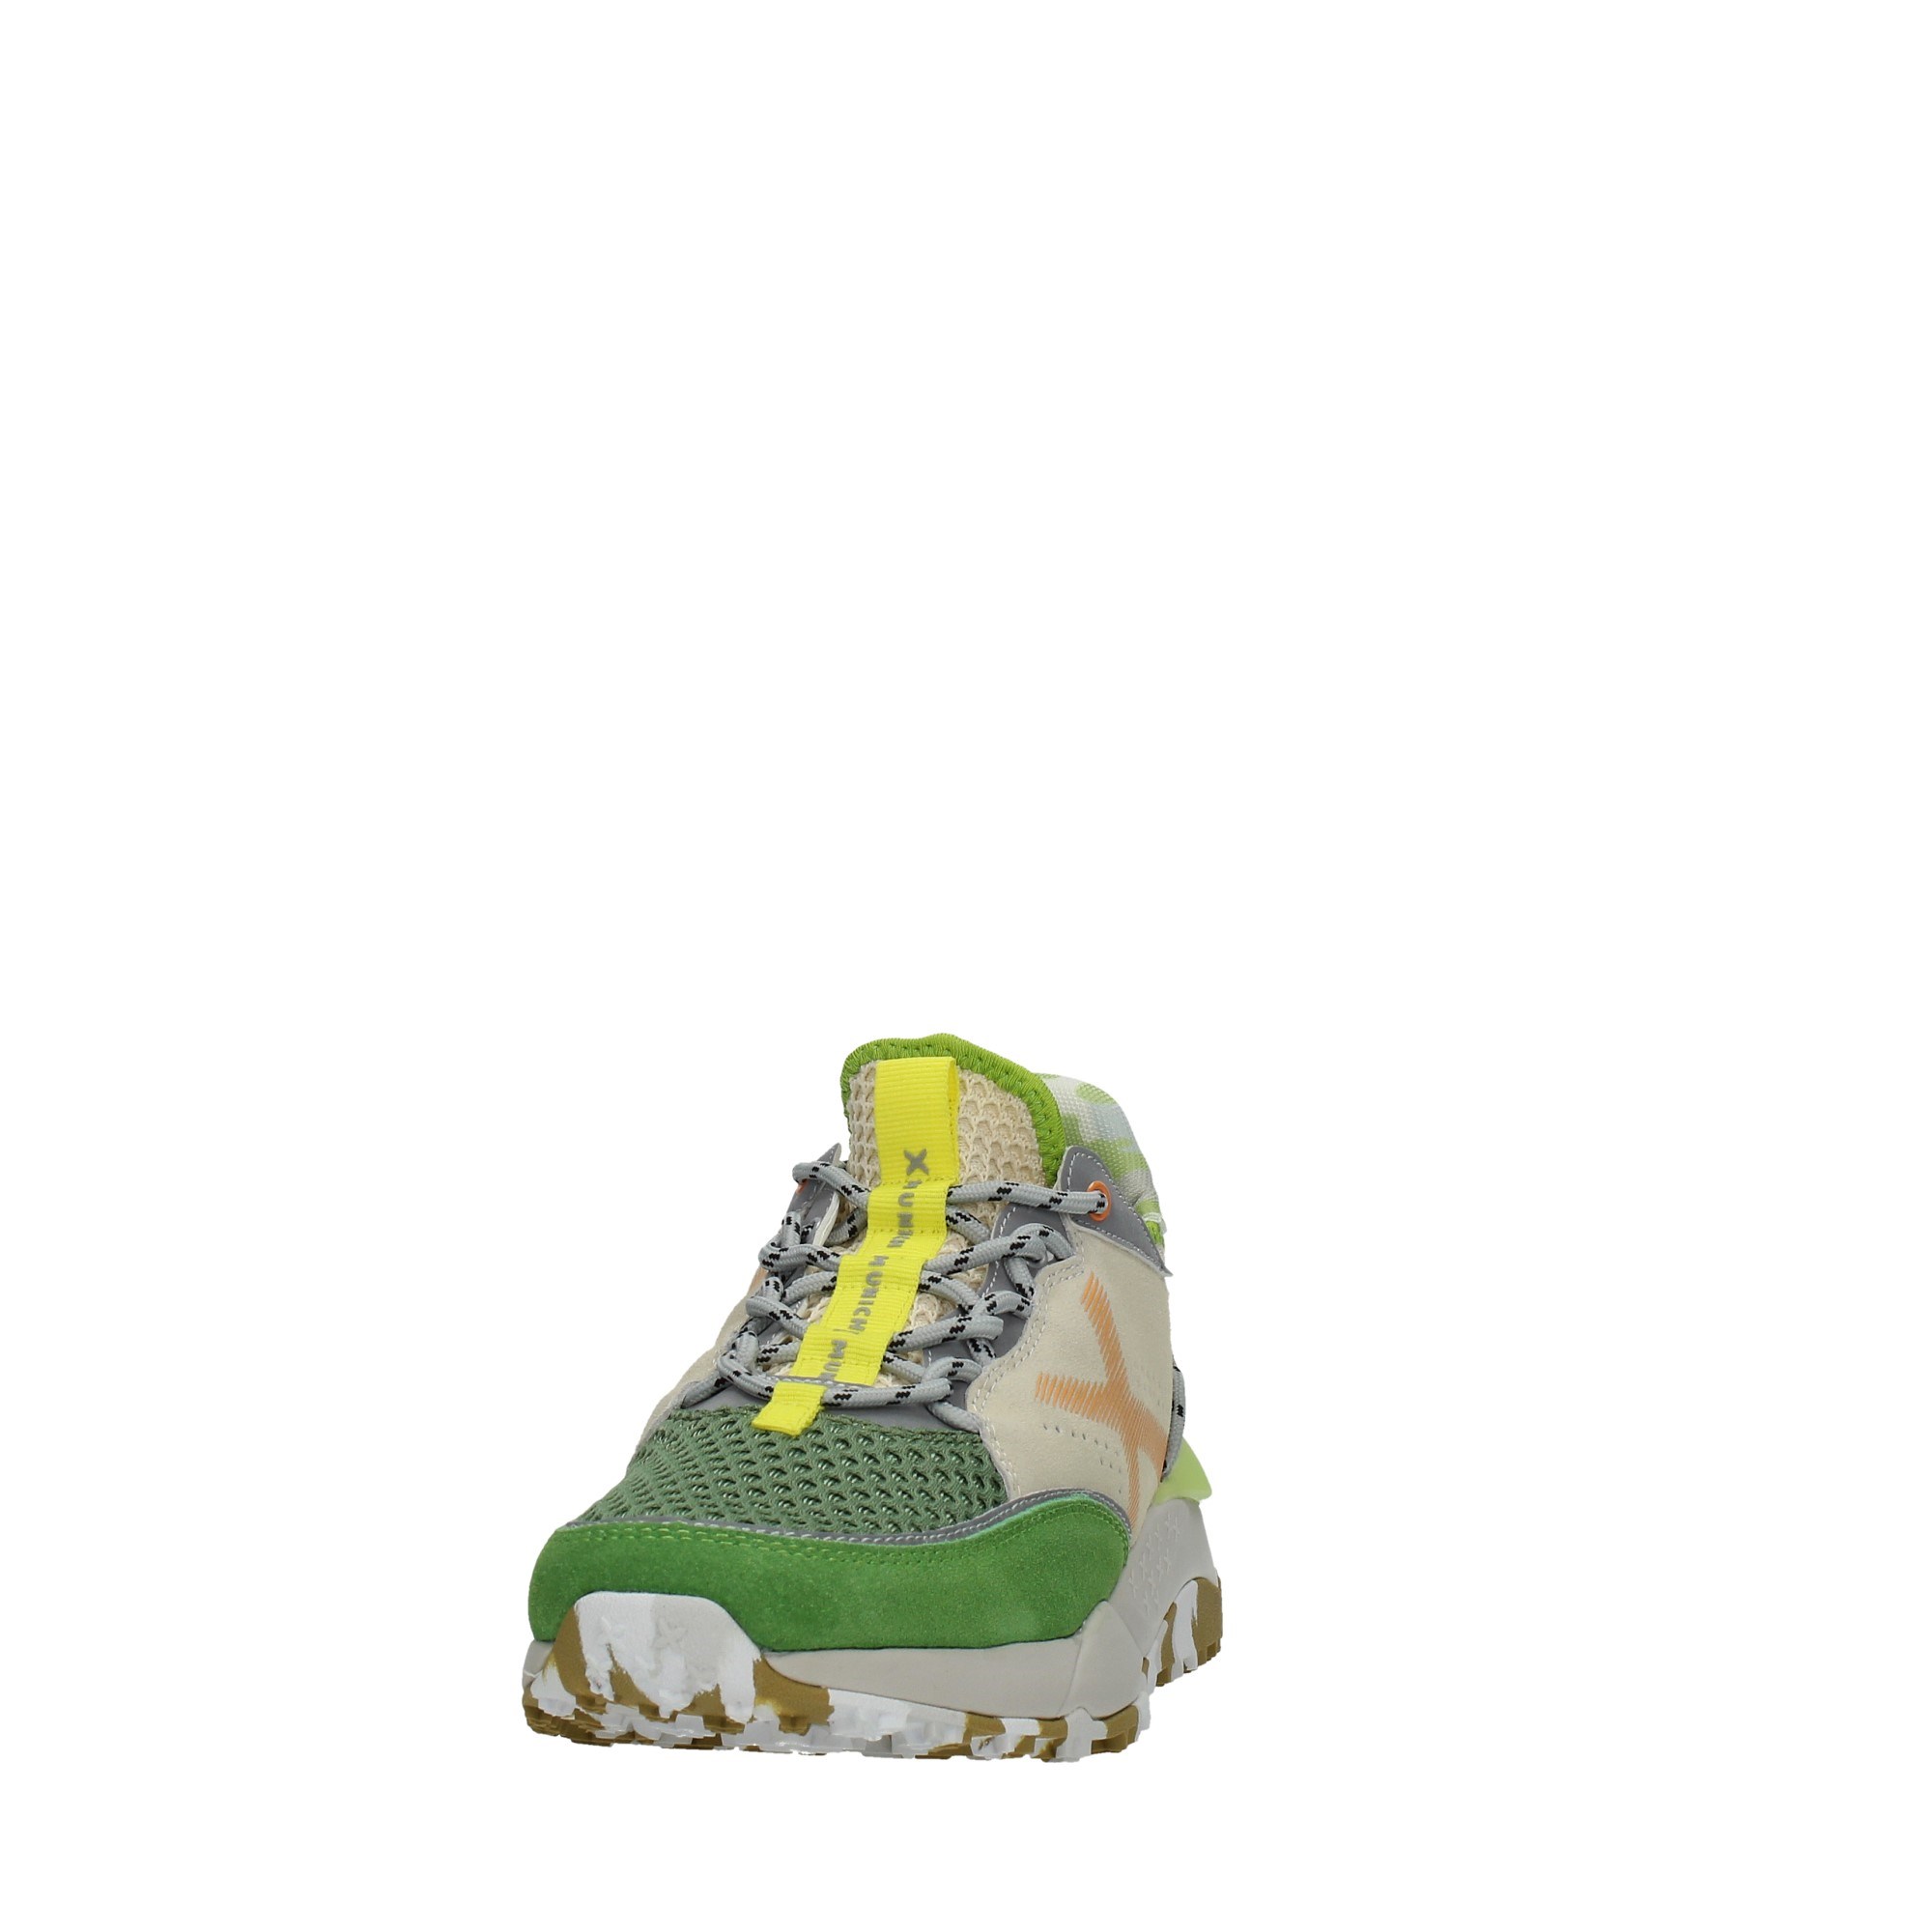 M U N I C H Shoes Man Sneakers 8772014/DORO 14